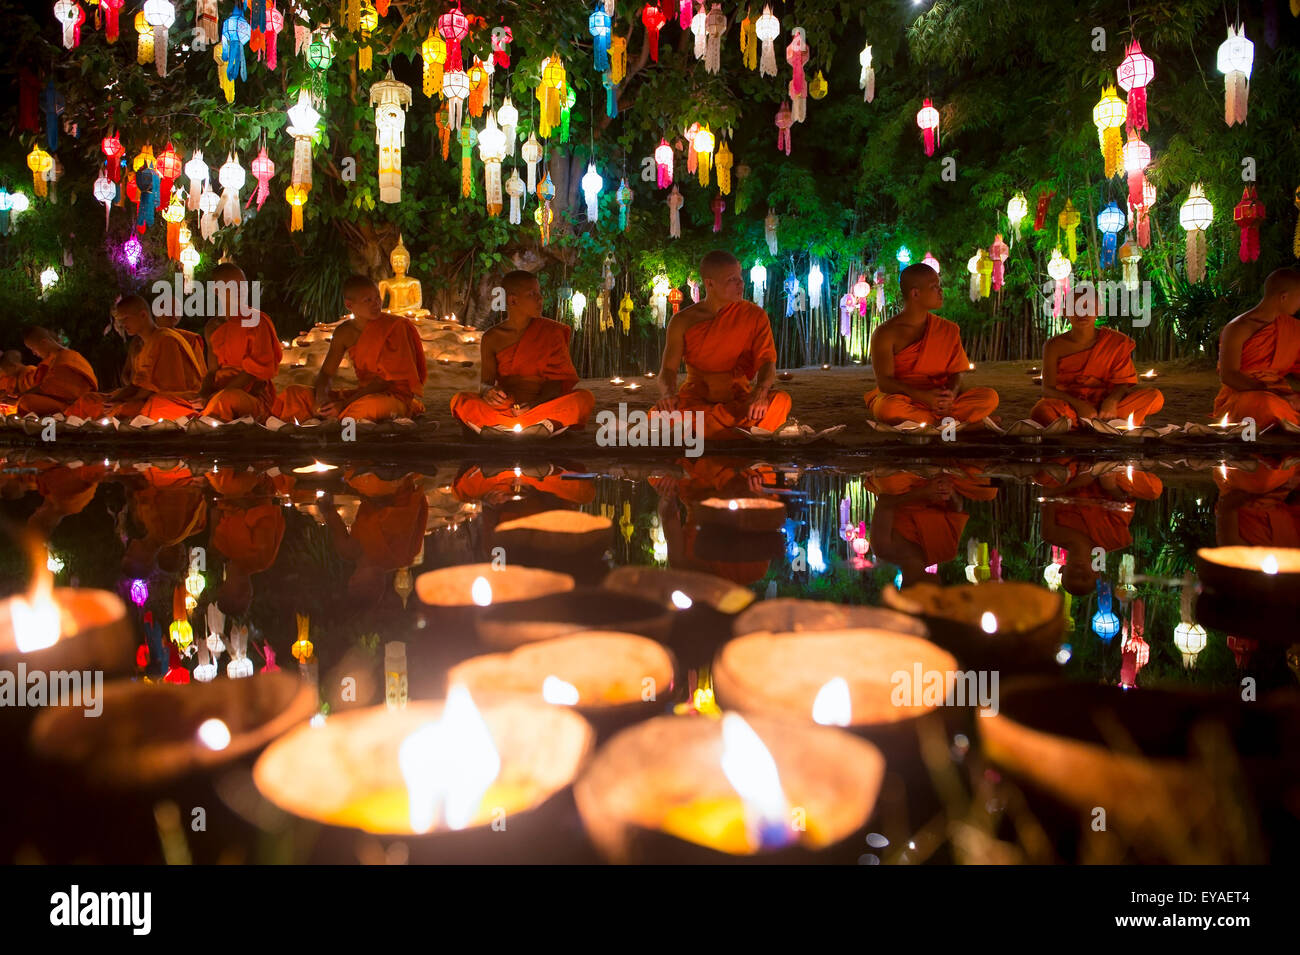 CHIANG MAI, Thailandia - Novembre 06, 2014: Candele galleggiante nella parte anteriore dei giovani monaci buddisti in meditazione in un festival delle luci. Foto Stock